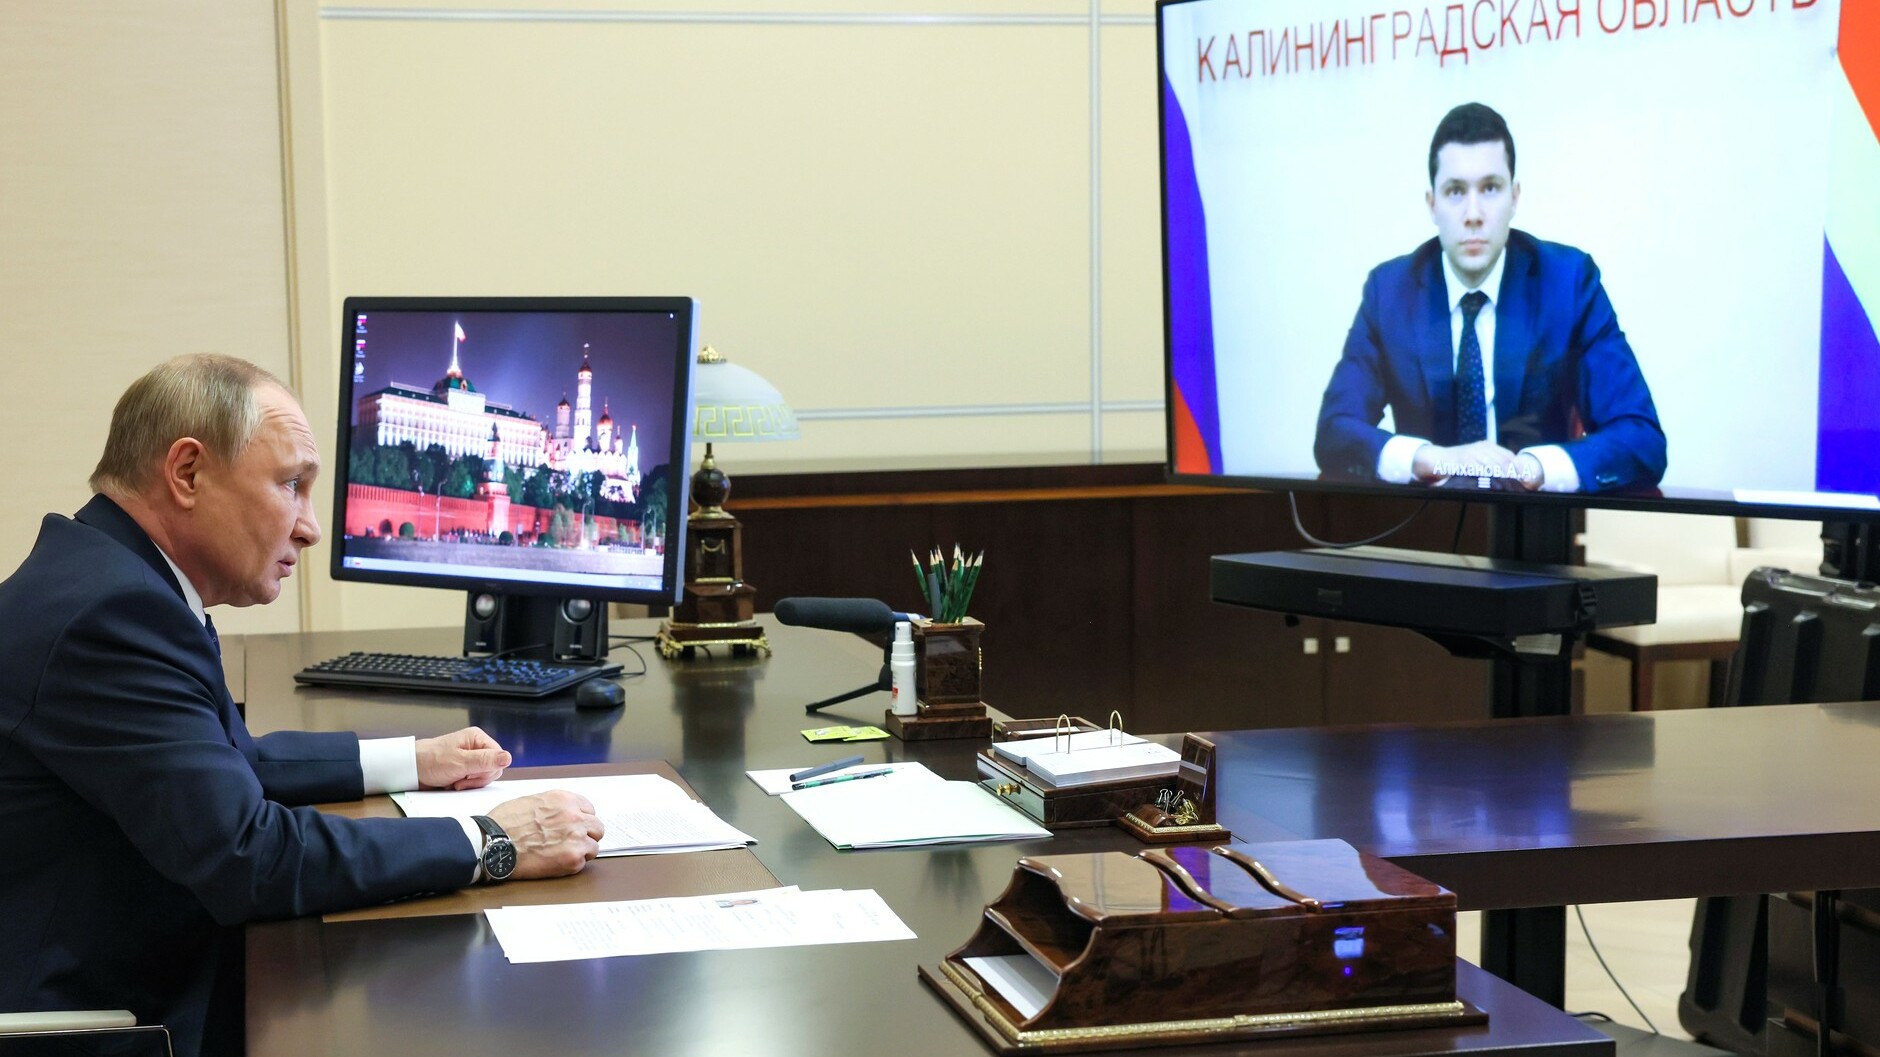 Ведомости: Алиханов станет министром в новом правительстве